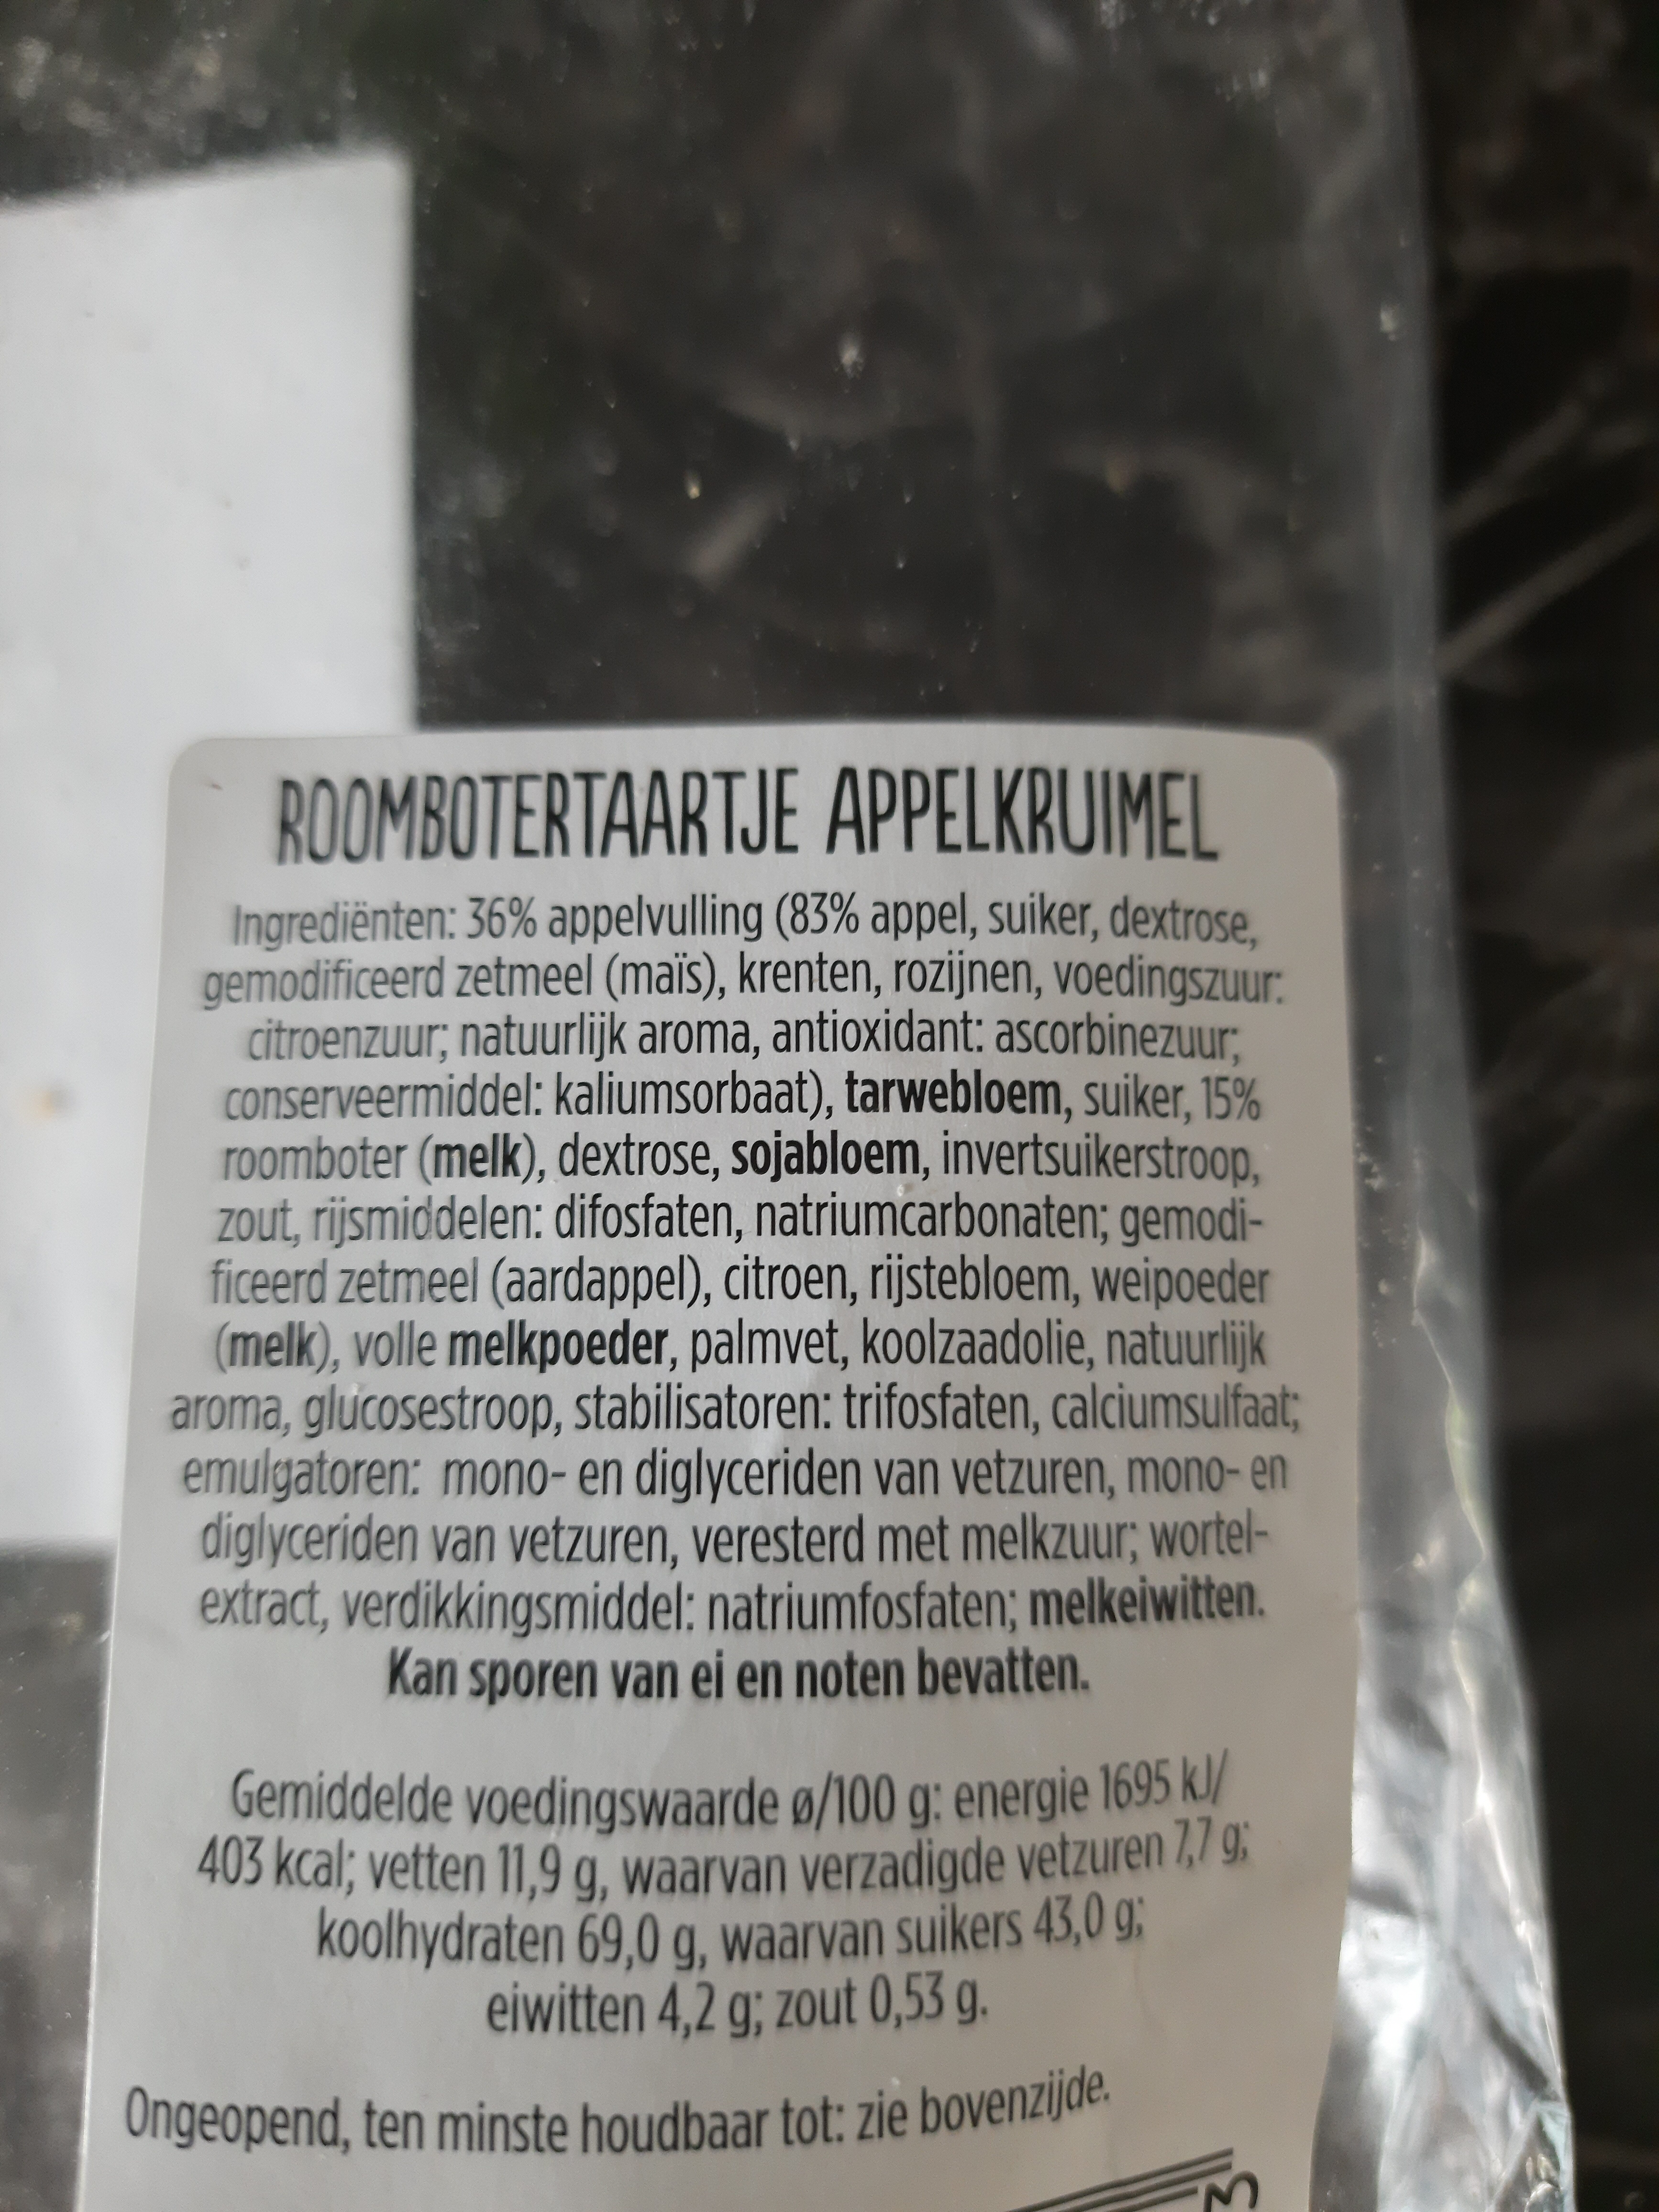 Roombotertaartje appelkruimel - Product